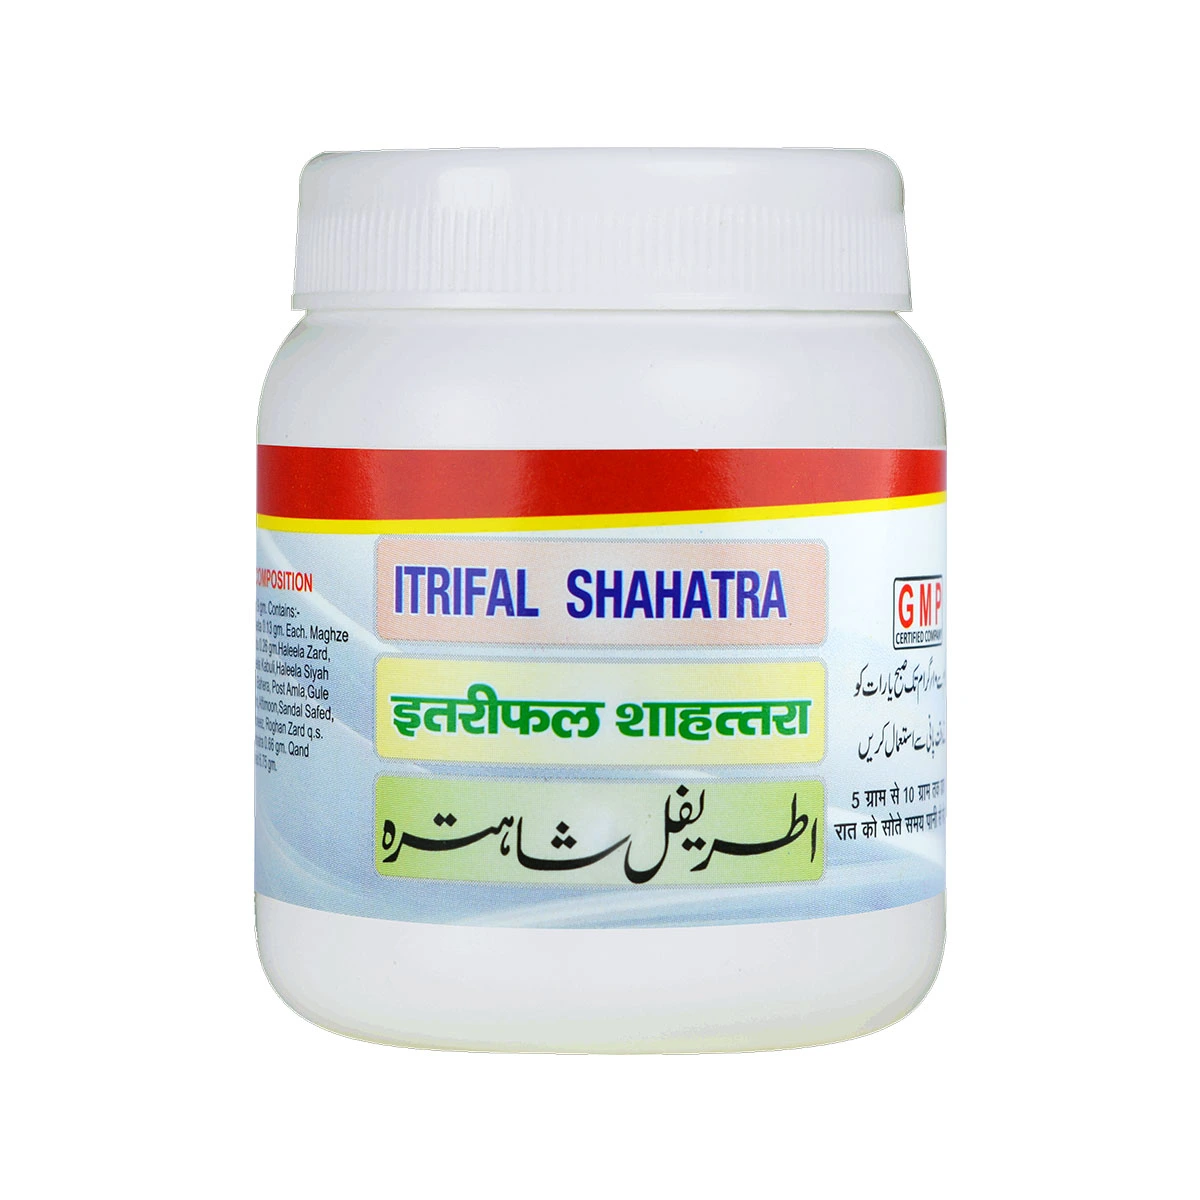 itrifal-shahatra